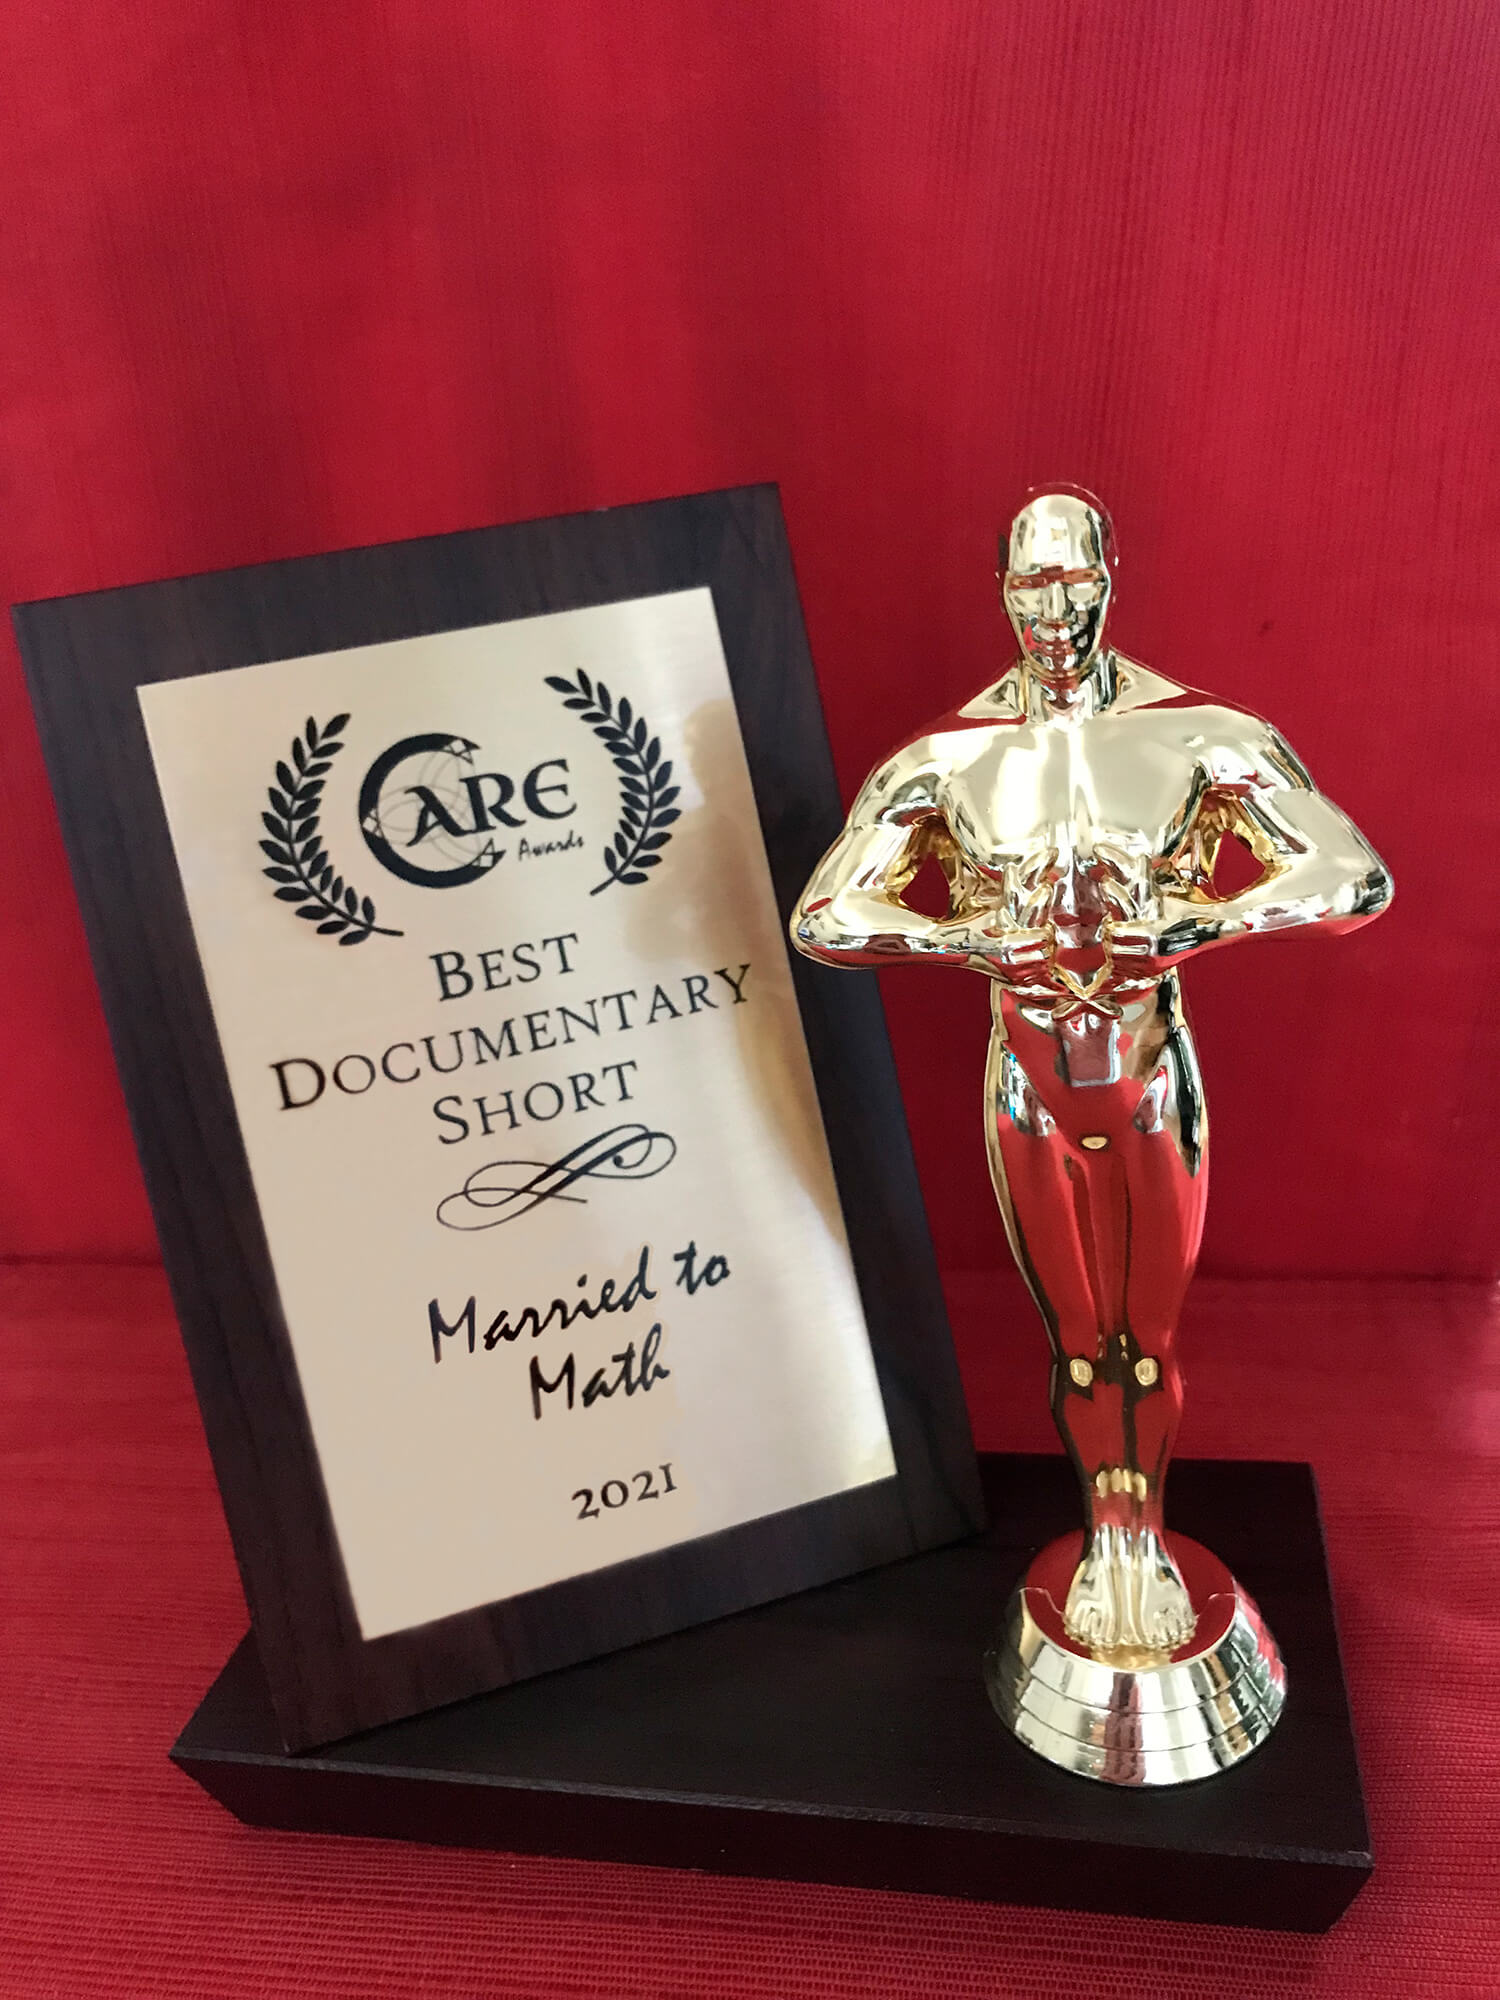 Care Awards BEST SHORT DOCUMENTARY Statuette.jpg